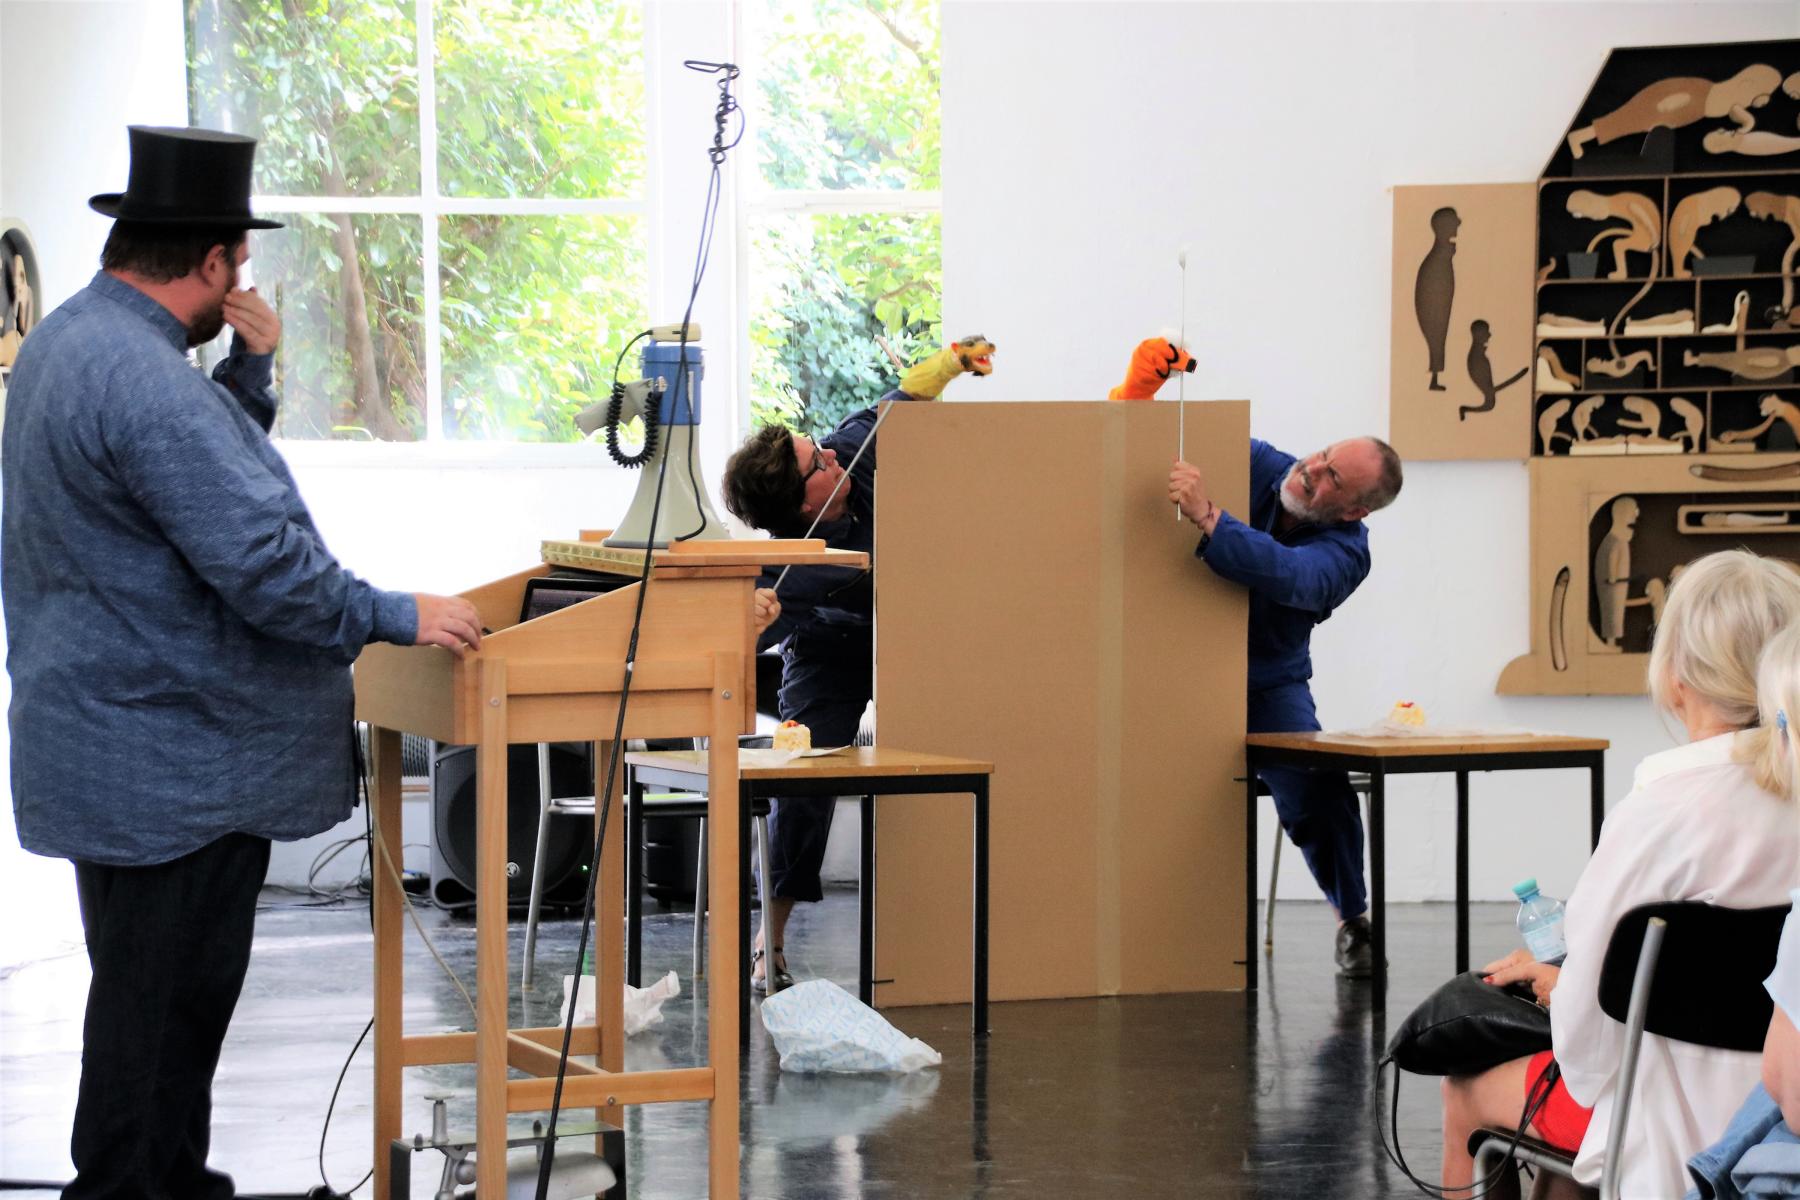  FOTOS:2019-08-03 Kunst querbeet Schulstr. 1 A Klee Kube-Druener Performance< >